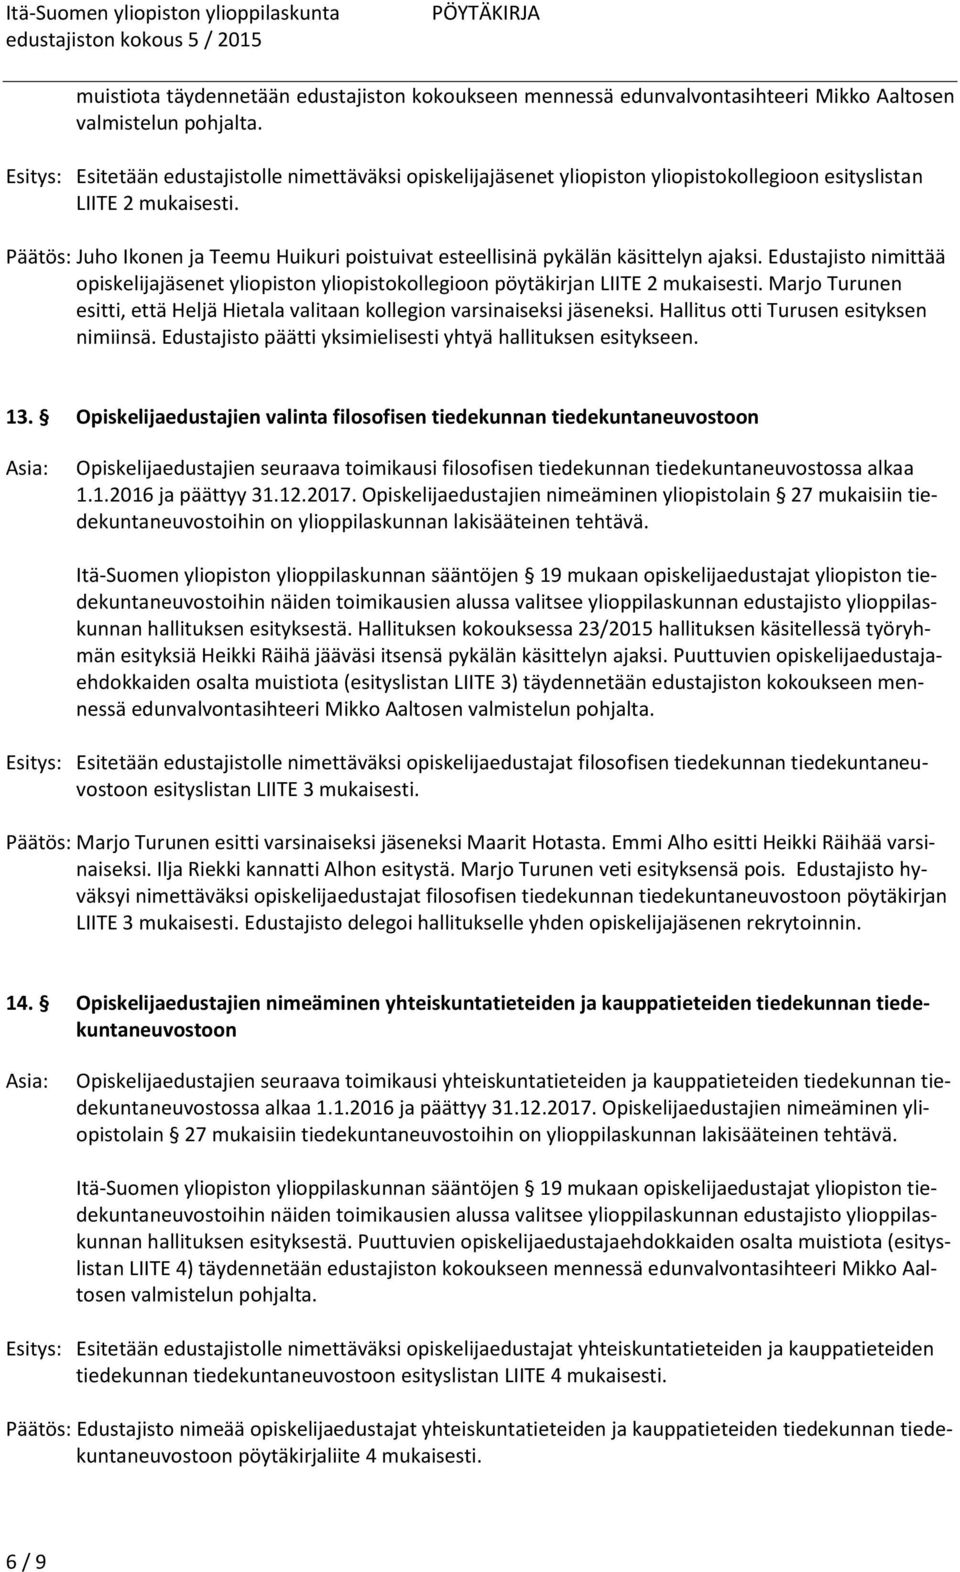 Päätös: Juho Ikonen ja Teemu Huikuri poistuivat esteellisinä pykälän käsittelyn ajaksi. Edustajisto nimittää opiskelijajäsenet yliopiston yliopistokollegioon pöytäkirjan LIITE 2 mukaisesti.